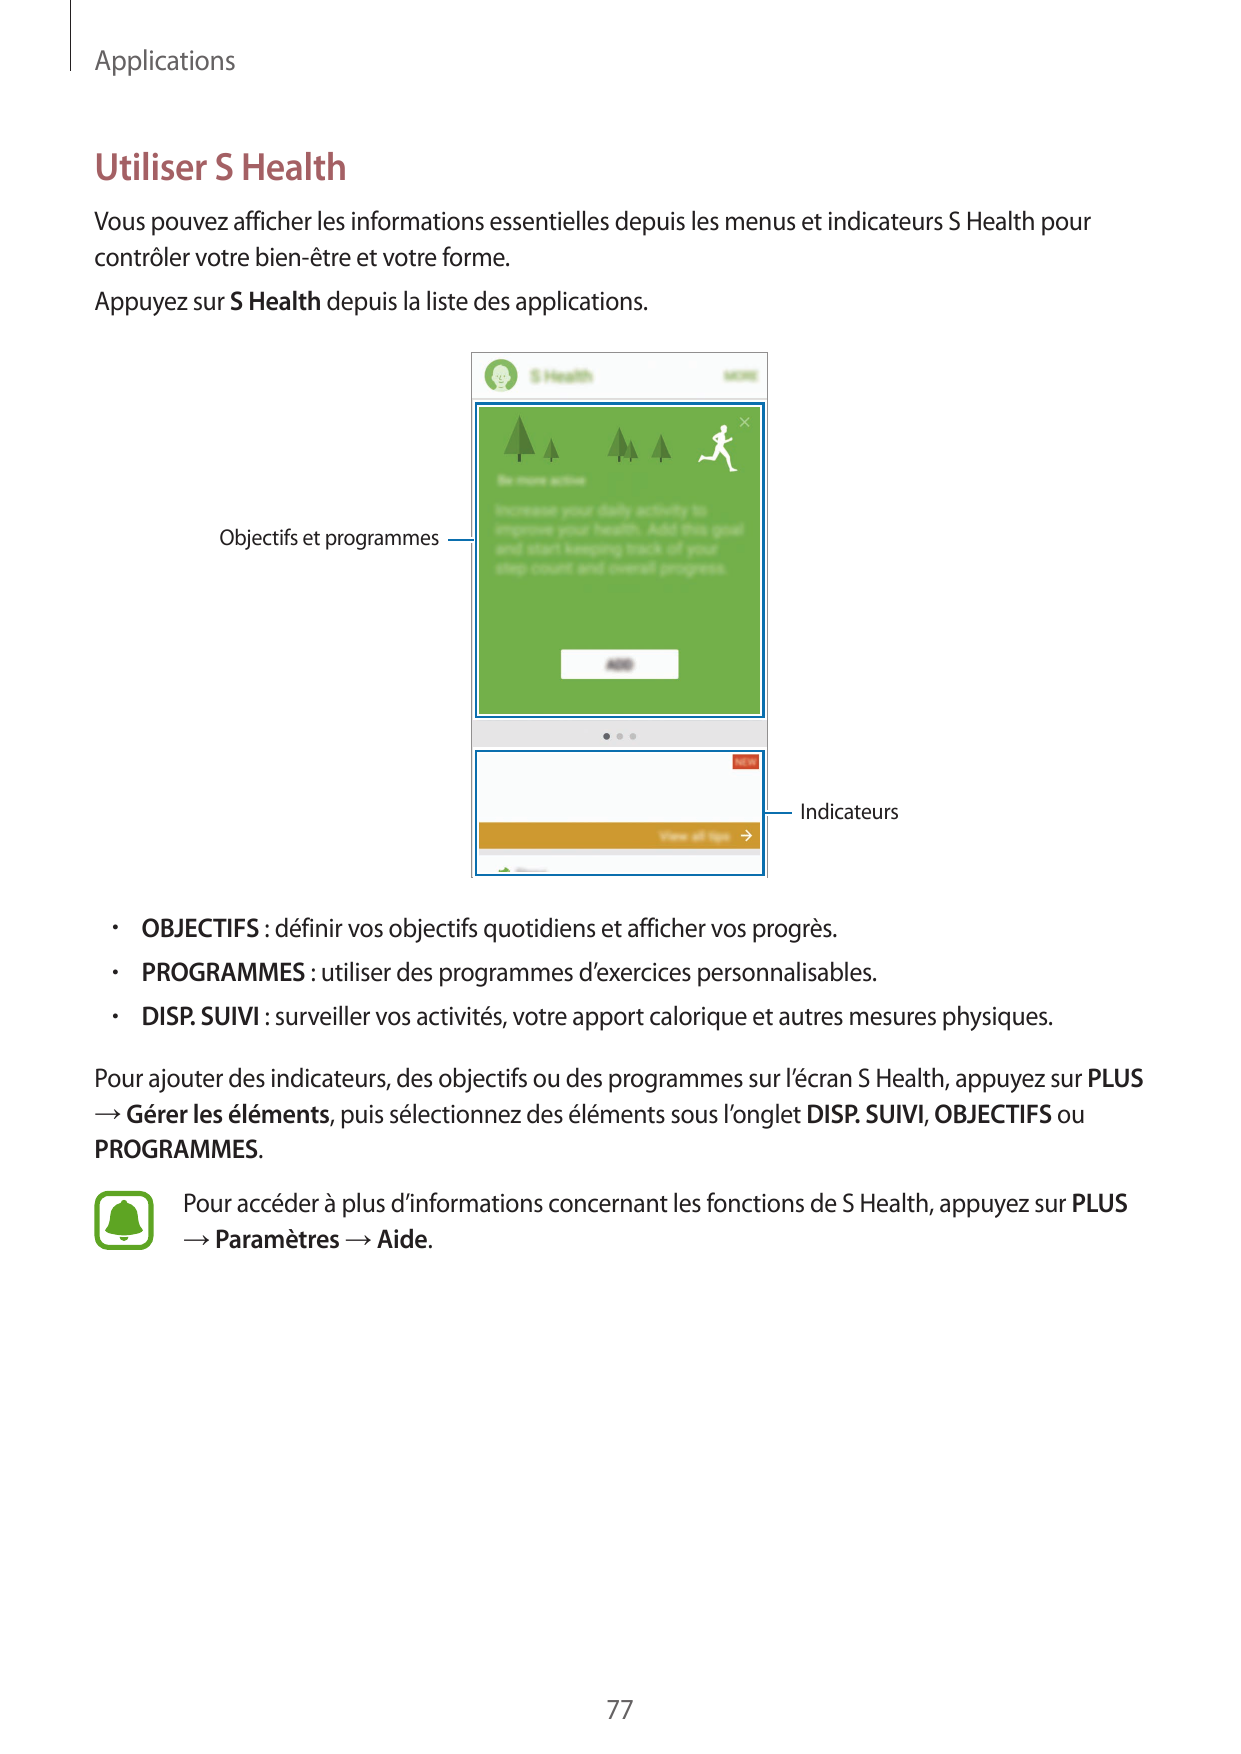 ApplicationsUtiliser S HealthVous pouvez afficher les informations essentielles depuis les menus et indicateurs S Health pourcon